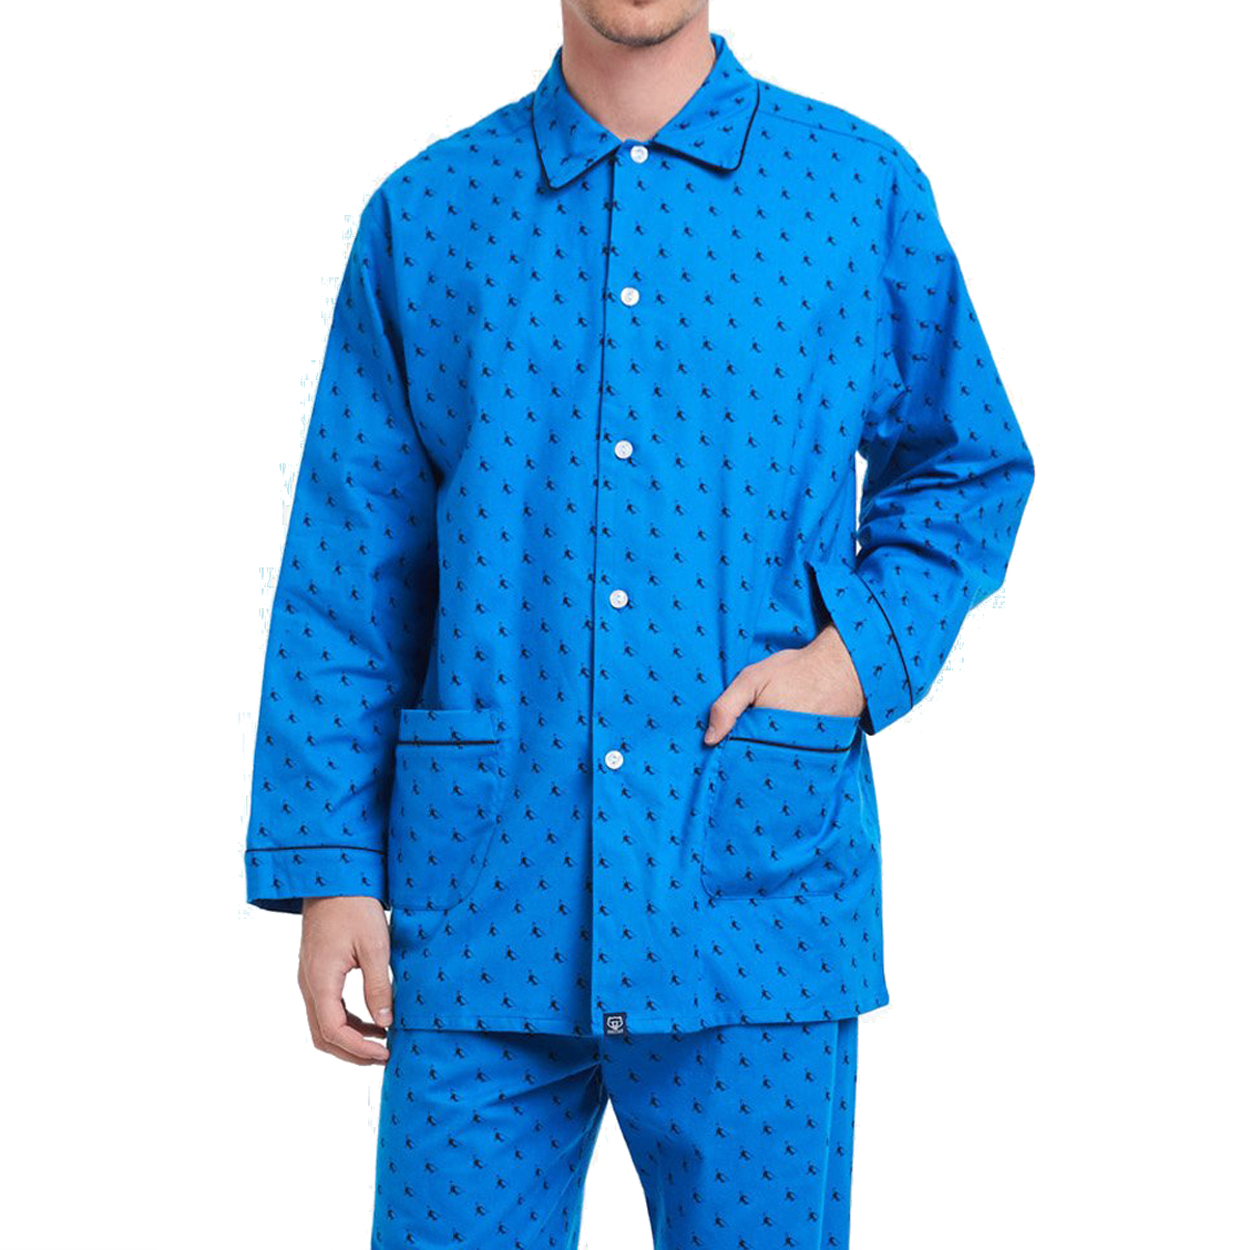 Pyjama long Arthur Piste en coton : chemise et pantalon bleu roi à motifs noirs